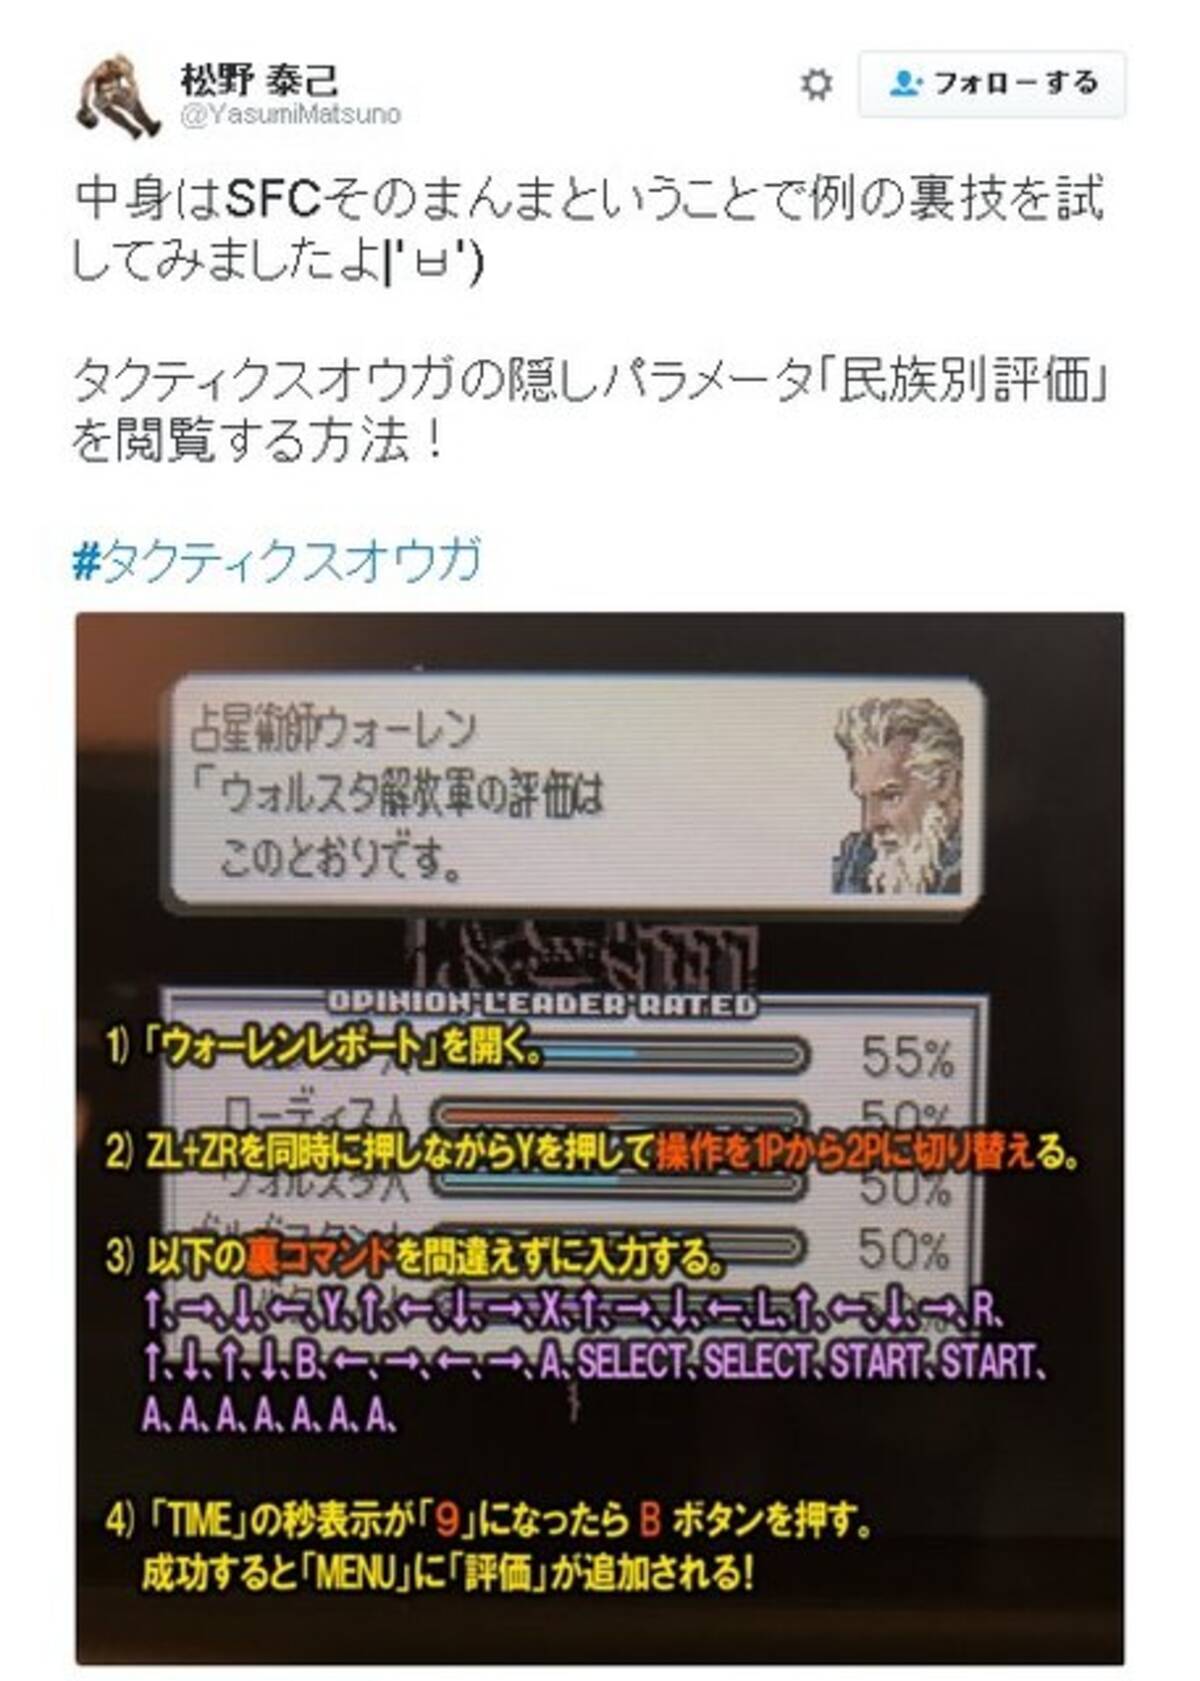 松野泰己 New 3dsのvc版 タクティクスオウガ で隠しパラメータを表示 入力方法もお披露目 16年11月25日 エキサイトニュース